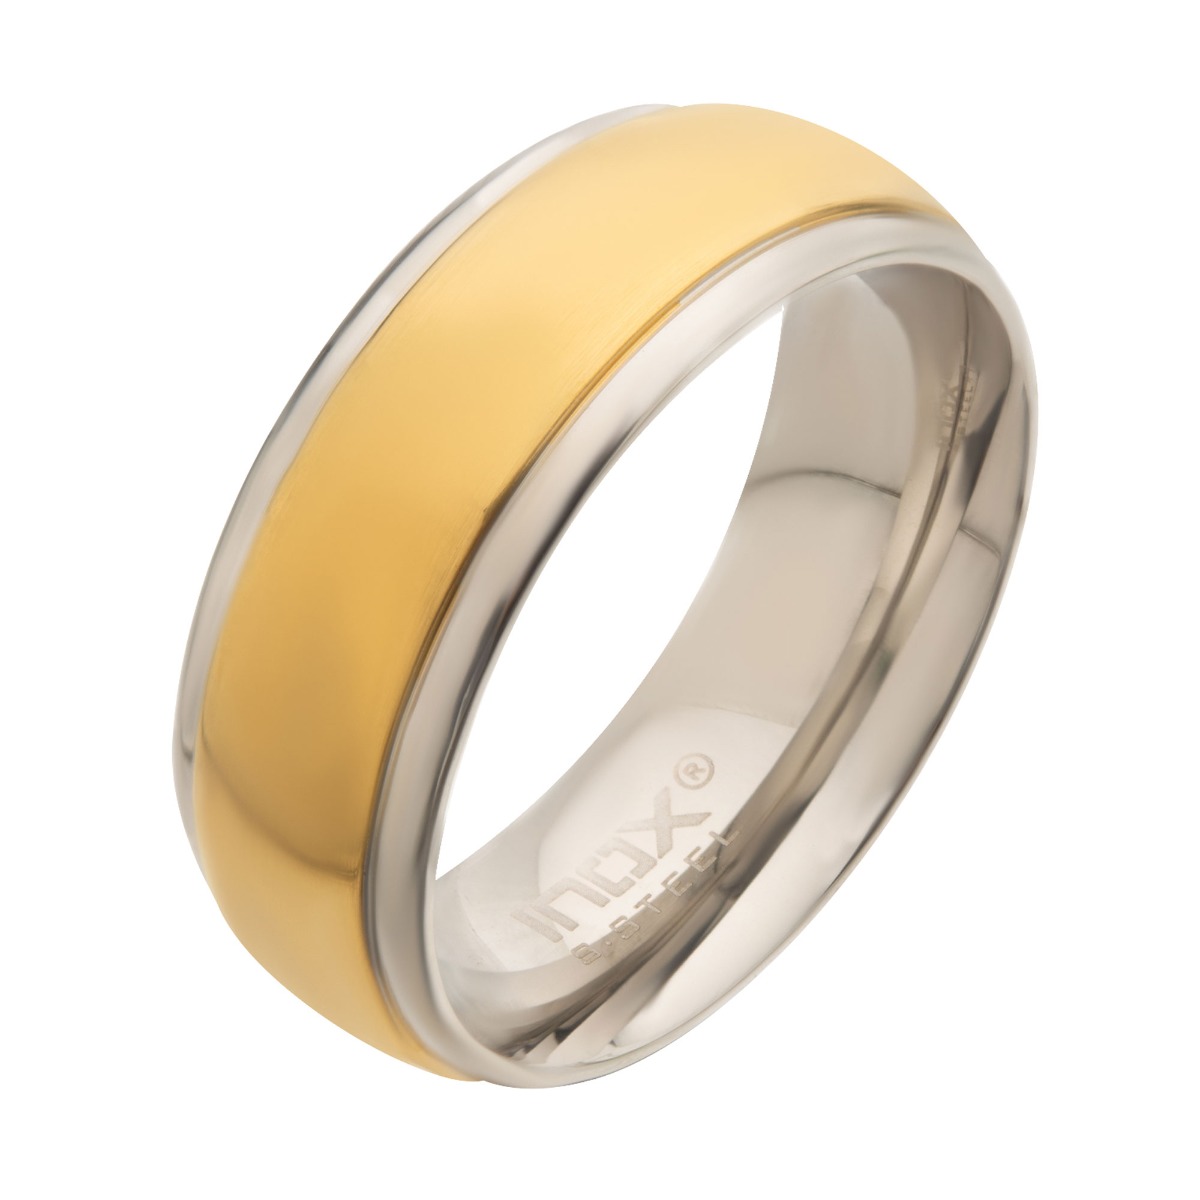 Steel & Gold Plated Patterned Design Ring K. Martin Jeweler Dodge City, KS